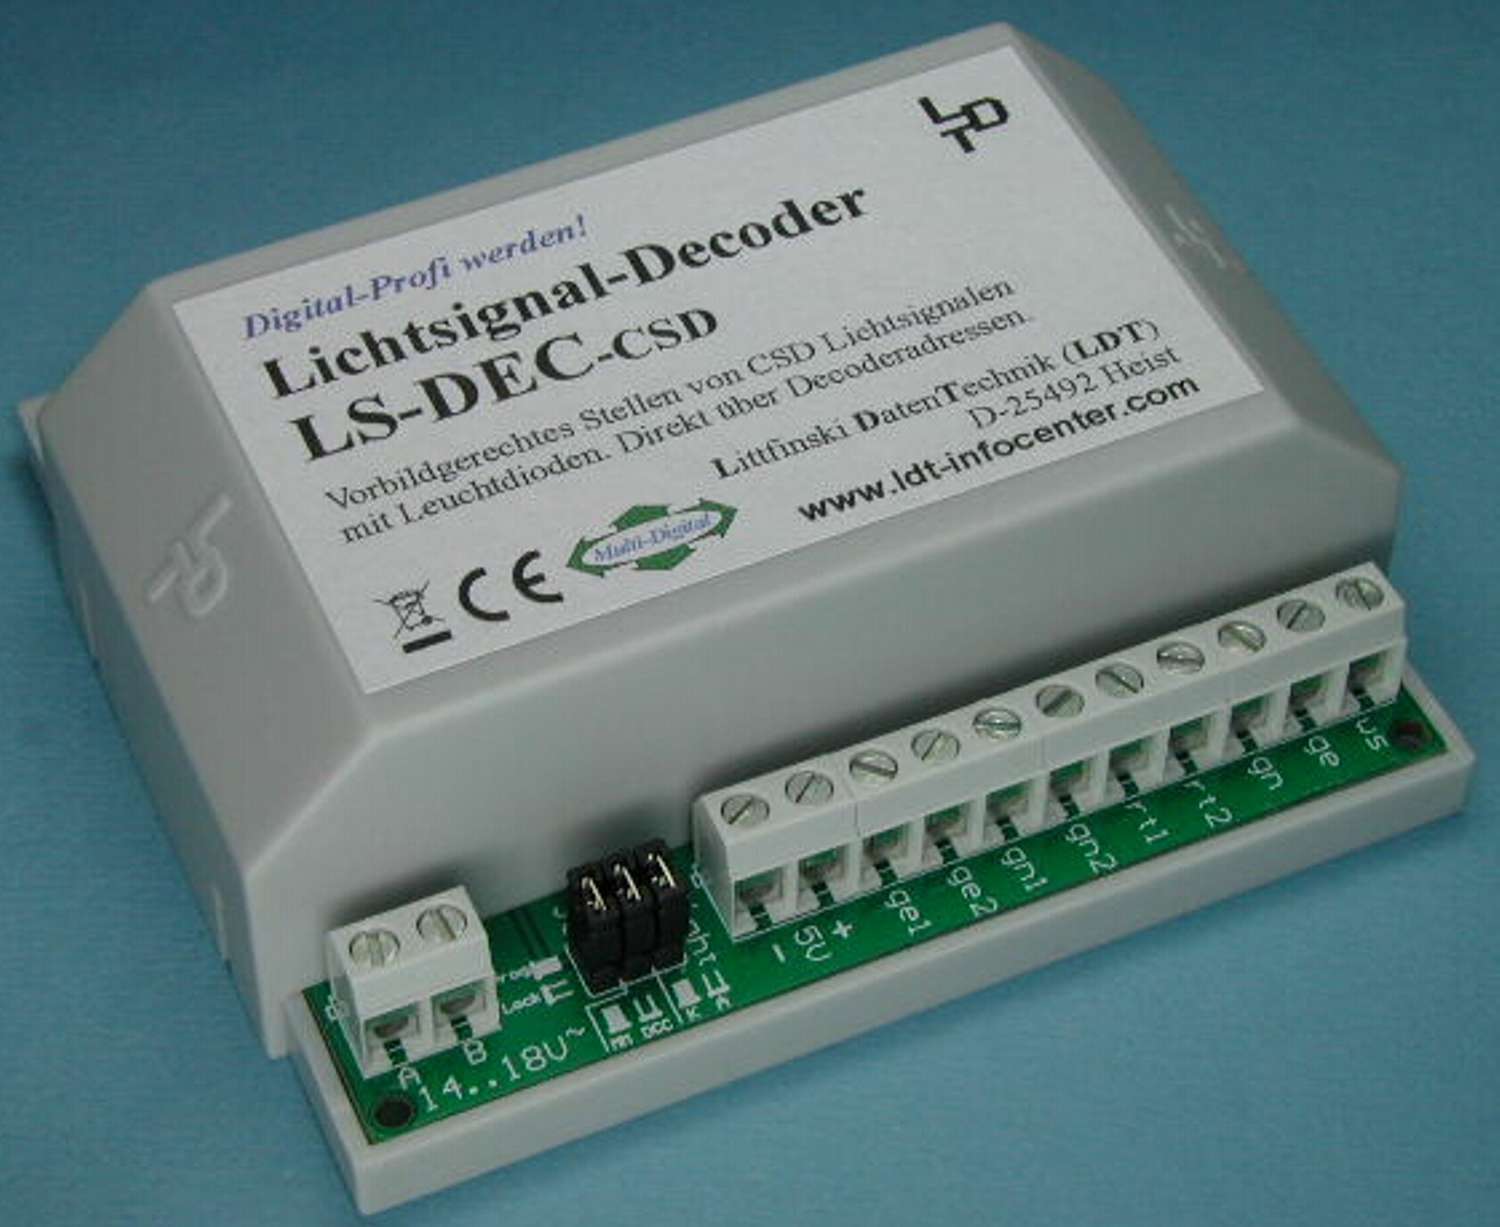 Littfinski 510513 - LS-DEC-CSD-G - Lichtsignaldecoder, 4-fach, für CSD-Signale, Fertigmodul im Gehäuse